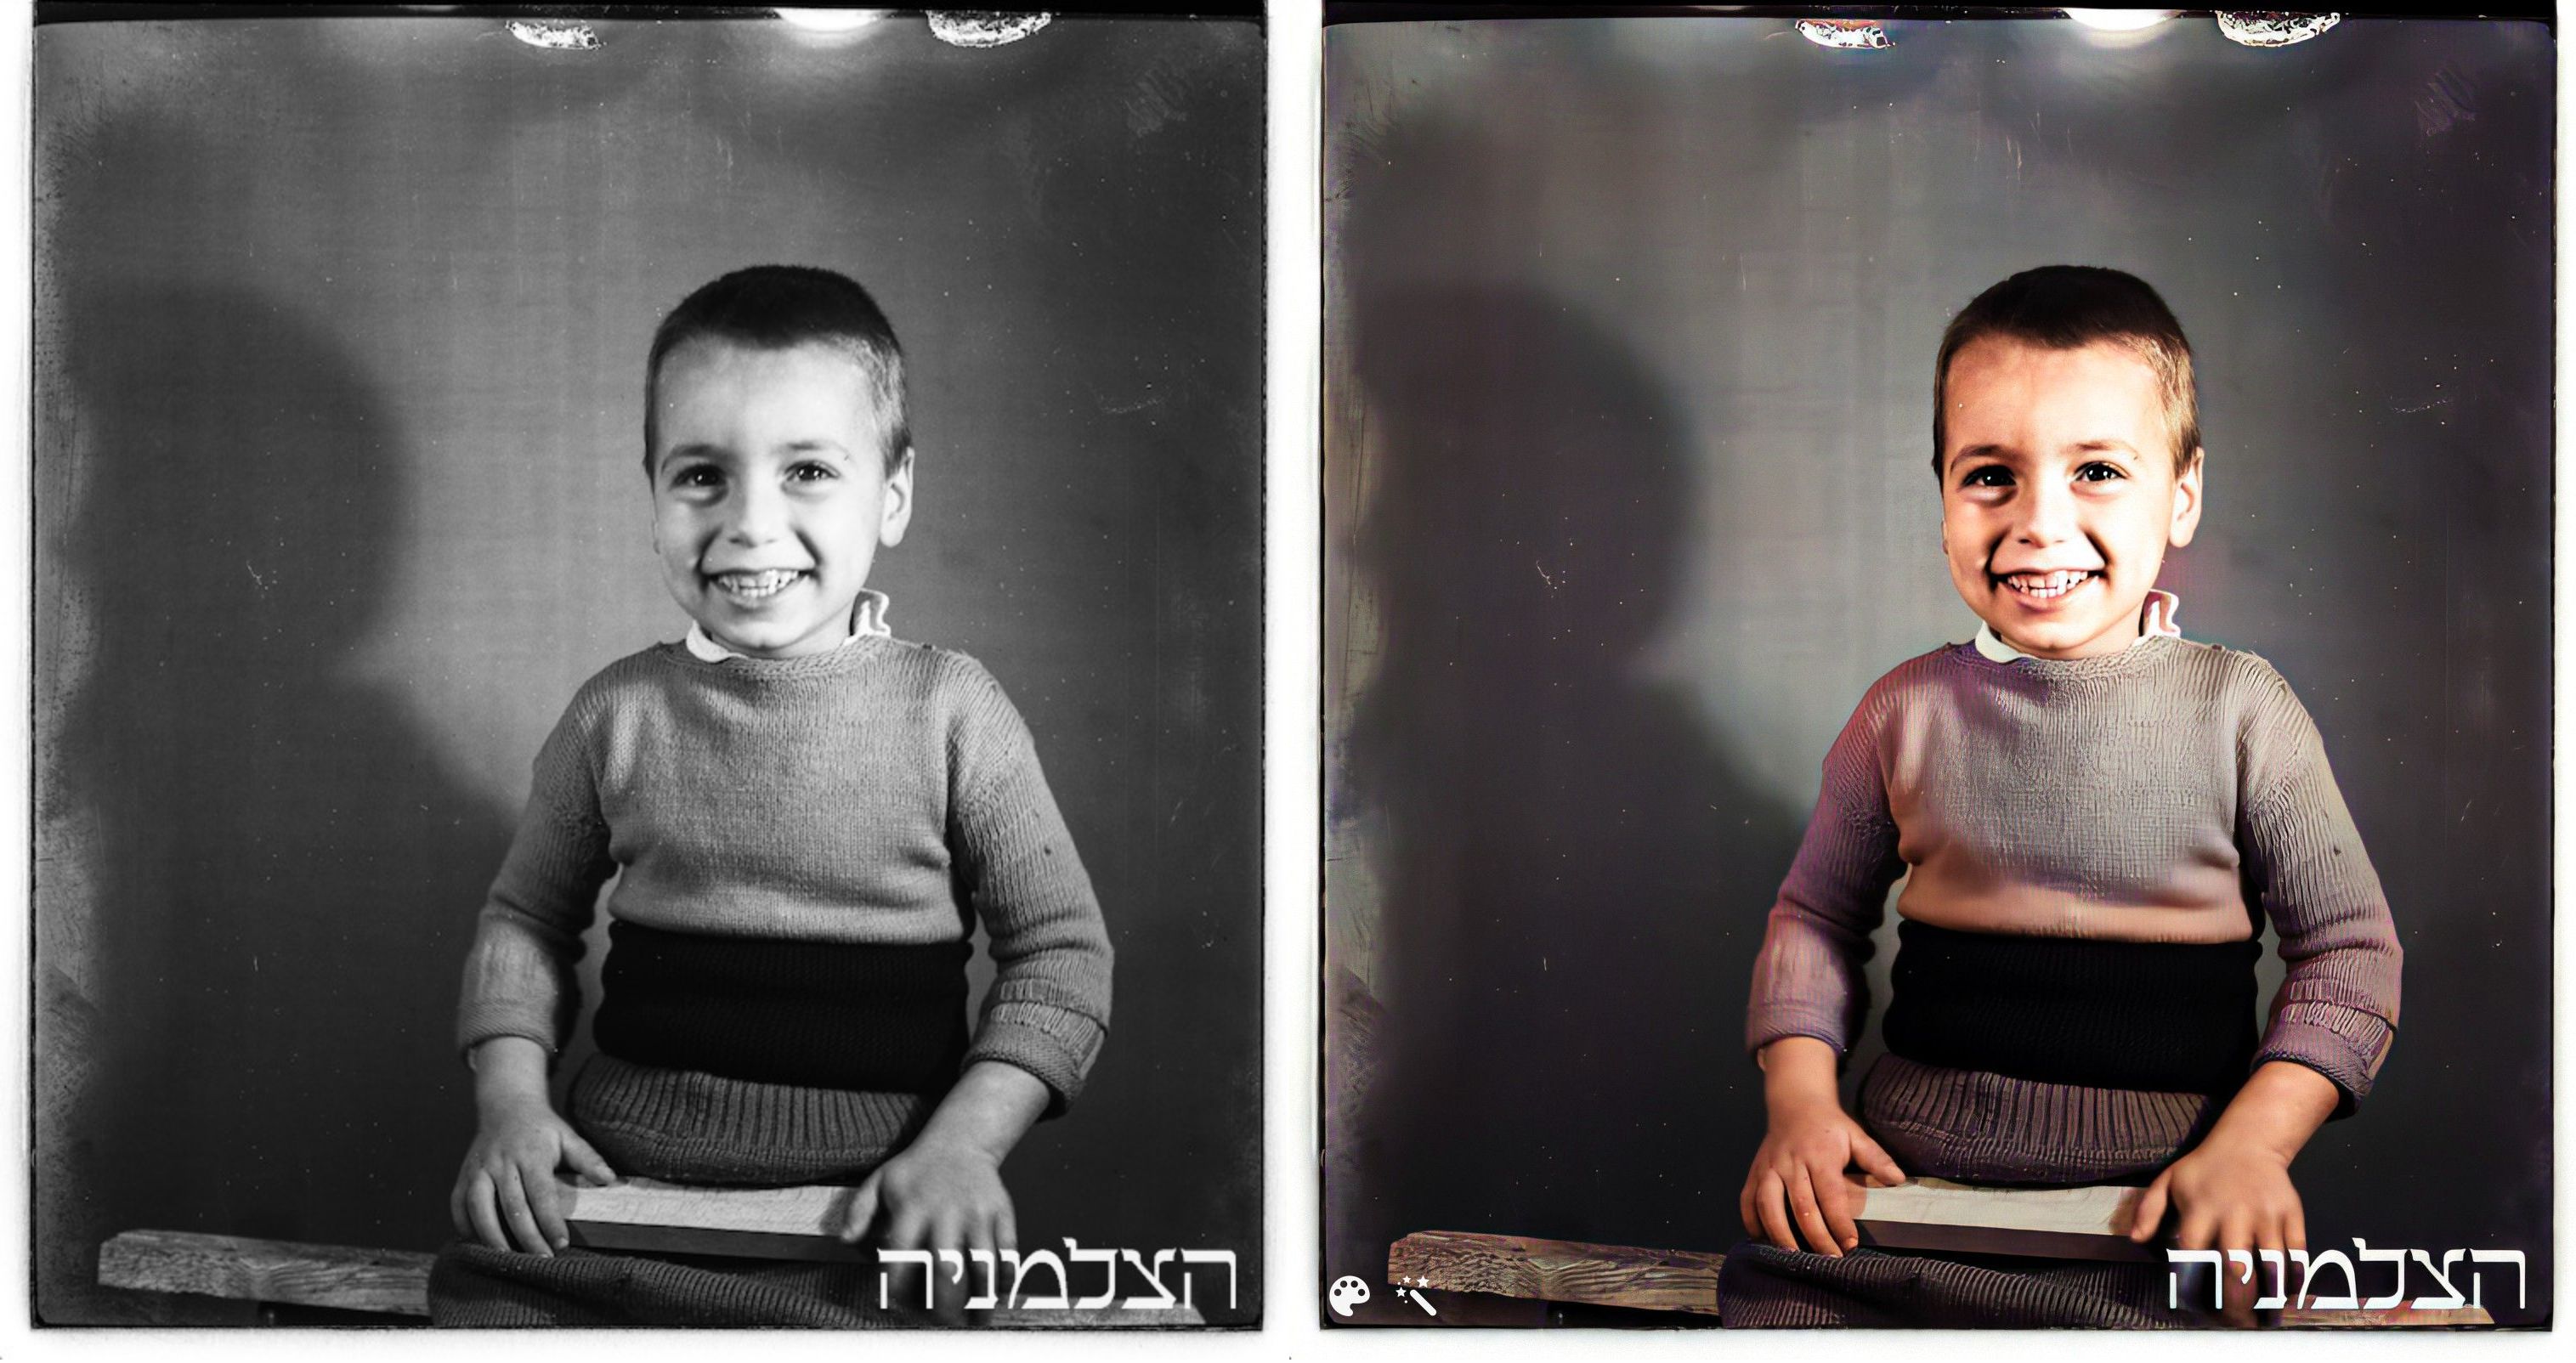 אדם אופנהיים, 1942, תל אביב. באדיבות "הצלמניה"